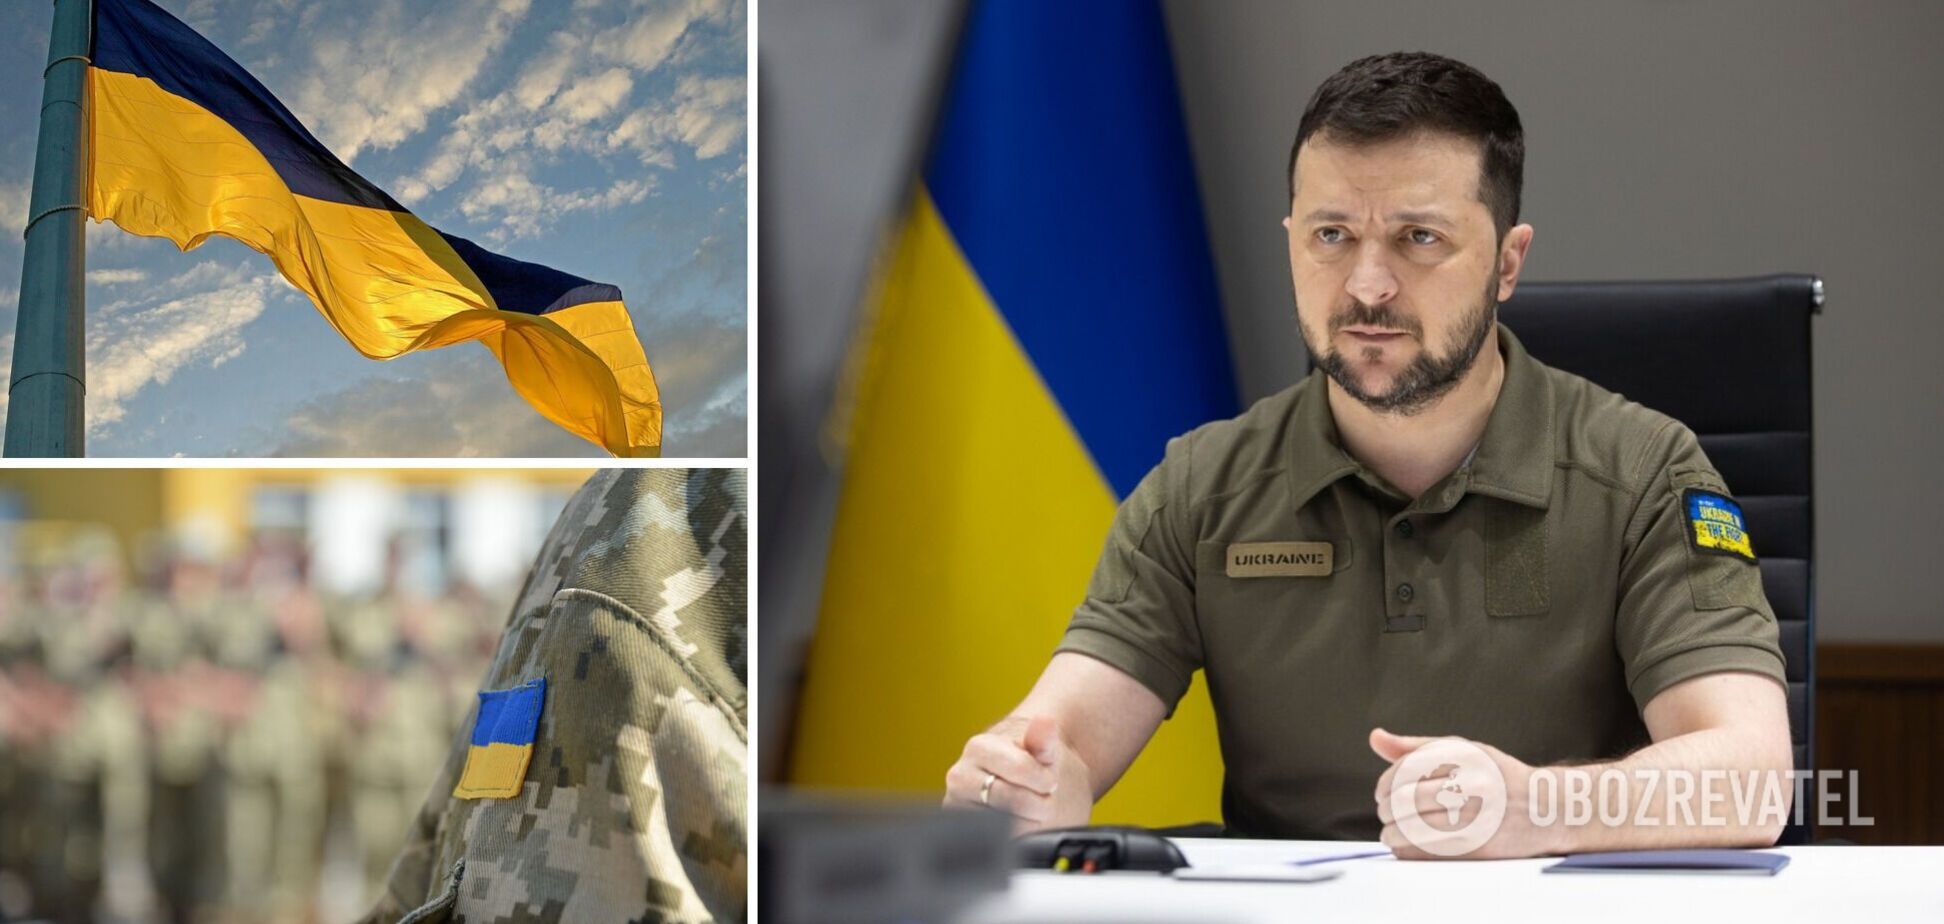 Зеленский назвал залог победы Украины и обратился к народу с призывом объединиться. Видео